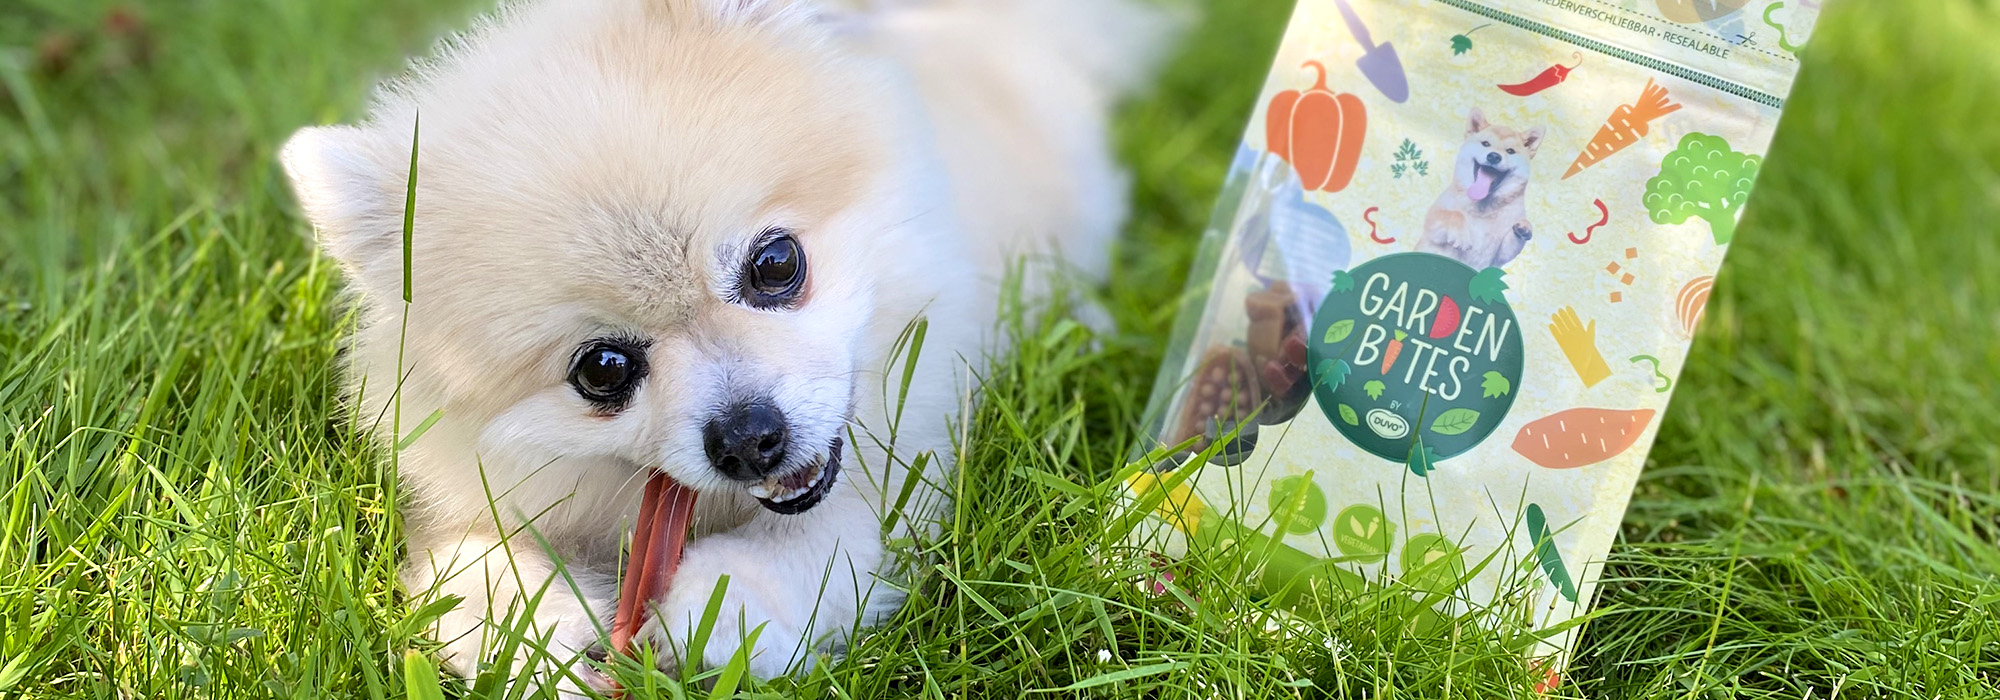 Een hond eet een vegetarische snack in een tuin